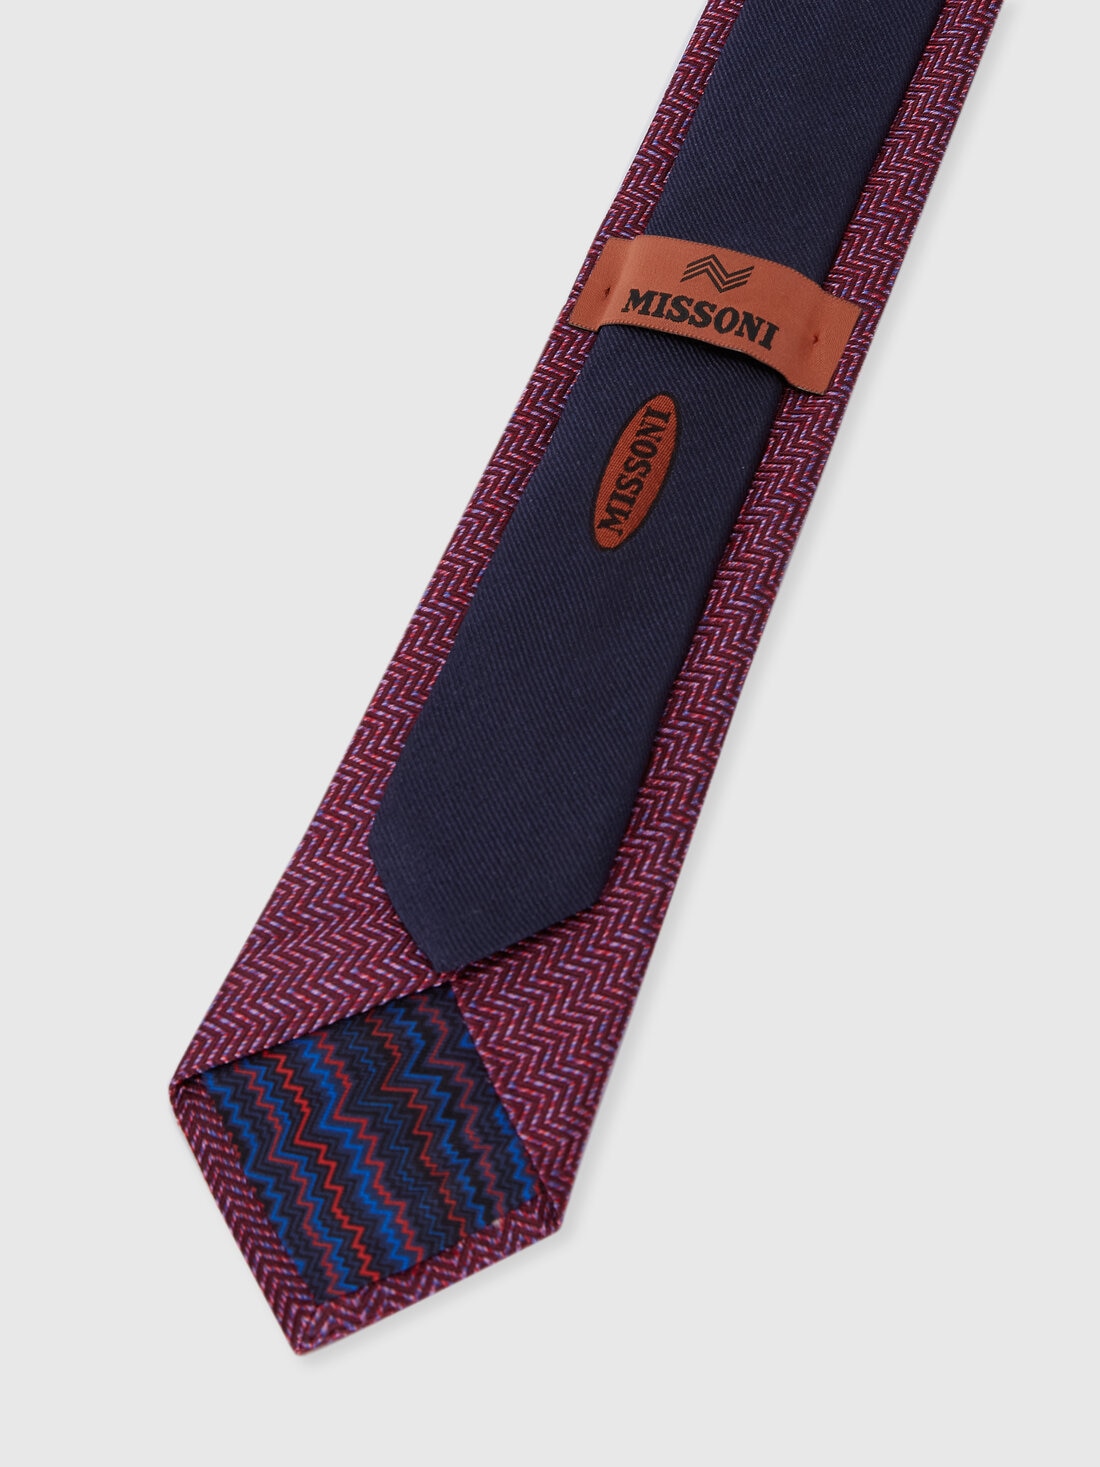 Silk chevron tie, Multicoloured  - 8053147141947 - 2